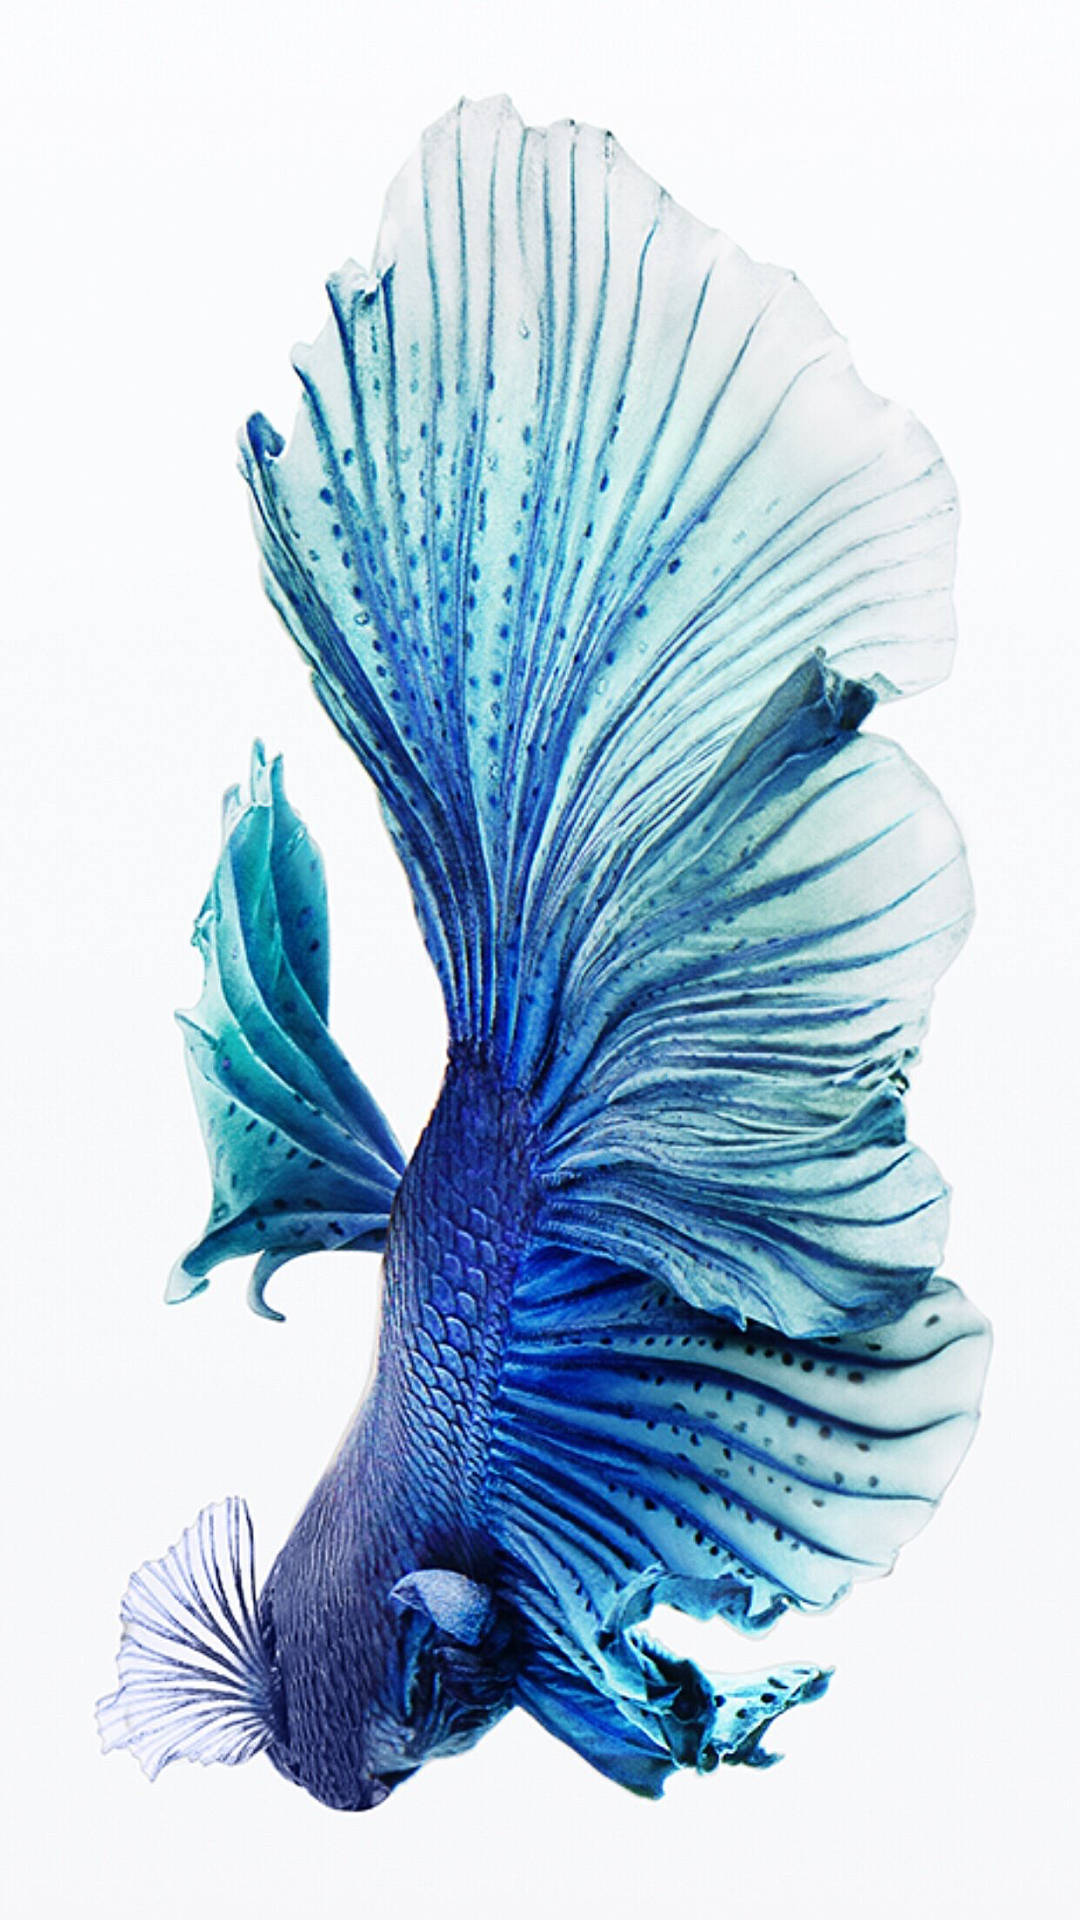 Hình nền Iphone cá Siamese chiến đấu màu xanh lam: Chiêm ngưỡng sức mạnh của loài cá siamese chiến đấu, thể hiện trên hình nền Iphone màu xanh lam độc đáo. Đây là lựa chọn hoàn hảo để làm nổi bật chiếc điện thoại của bạn với hình ảnh mạnh mẽ và cuốn hút.